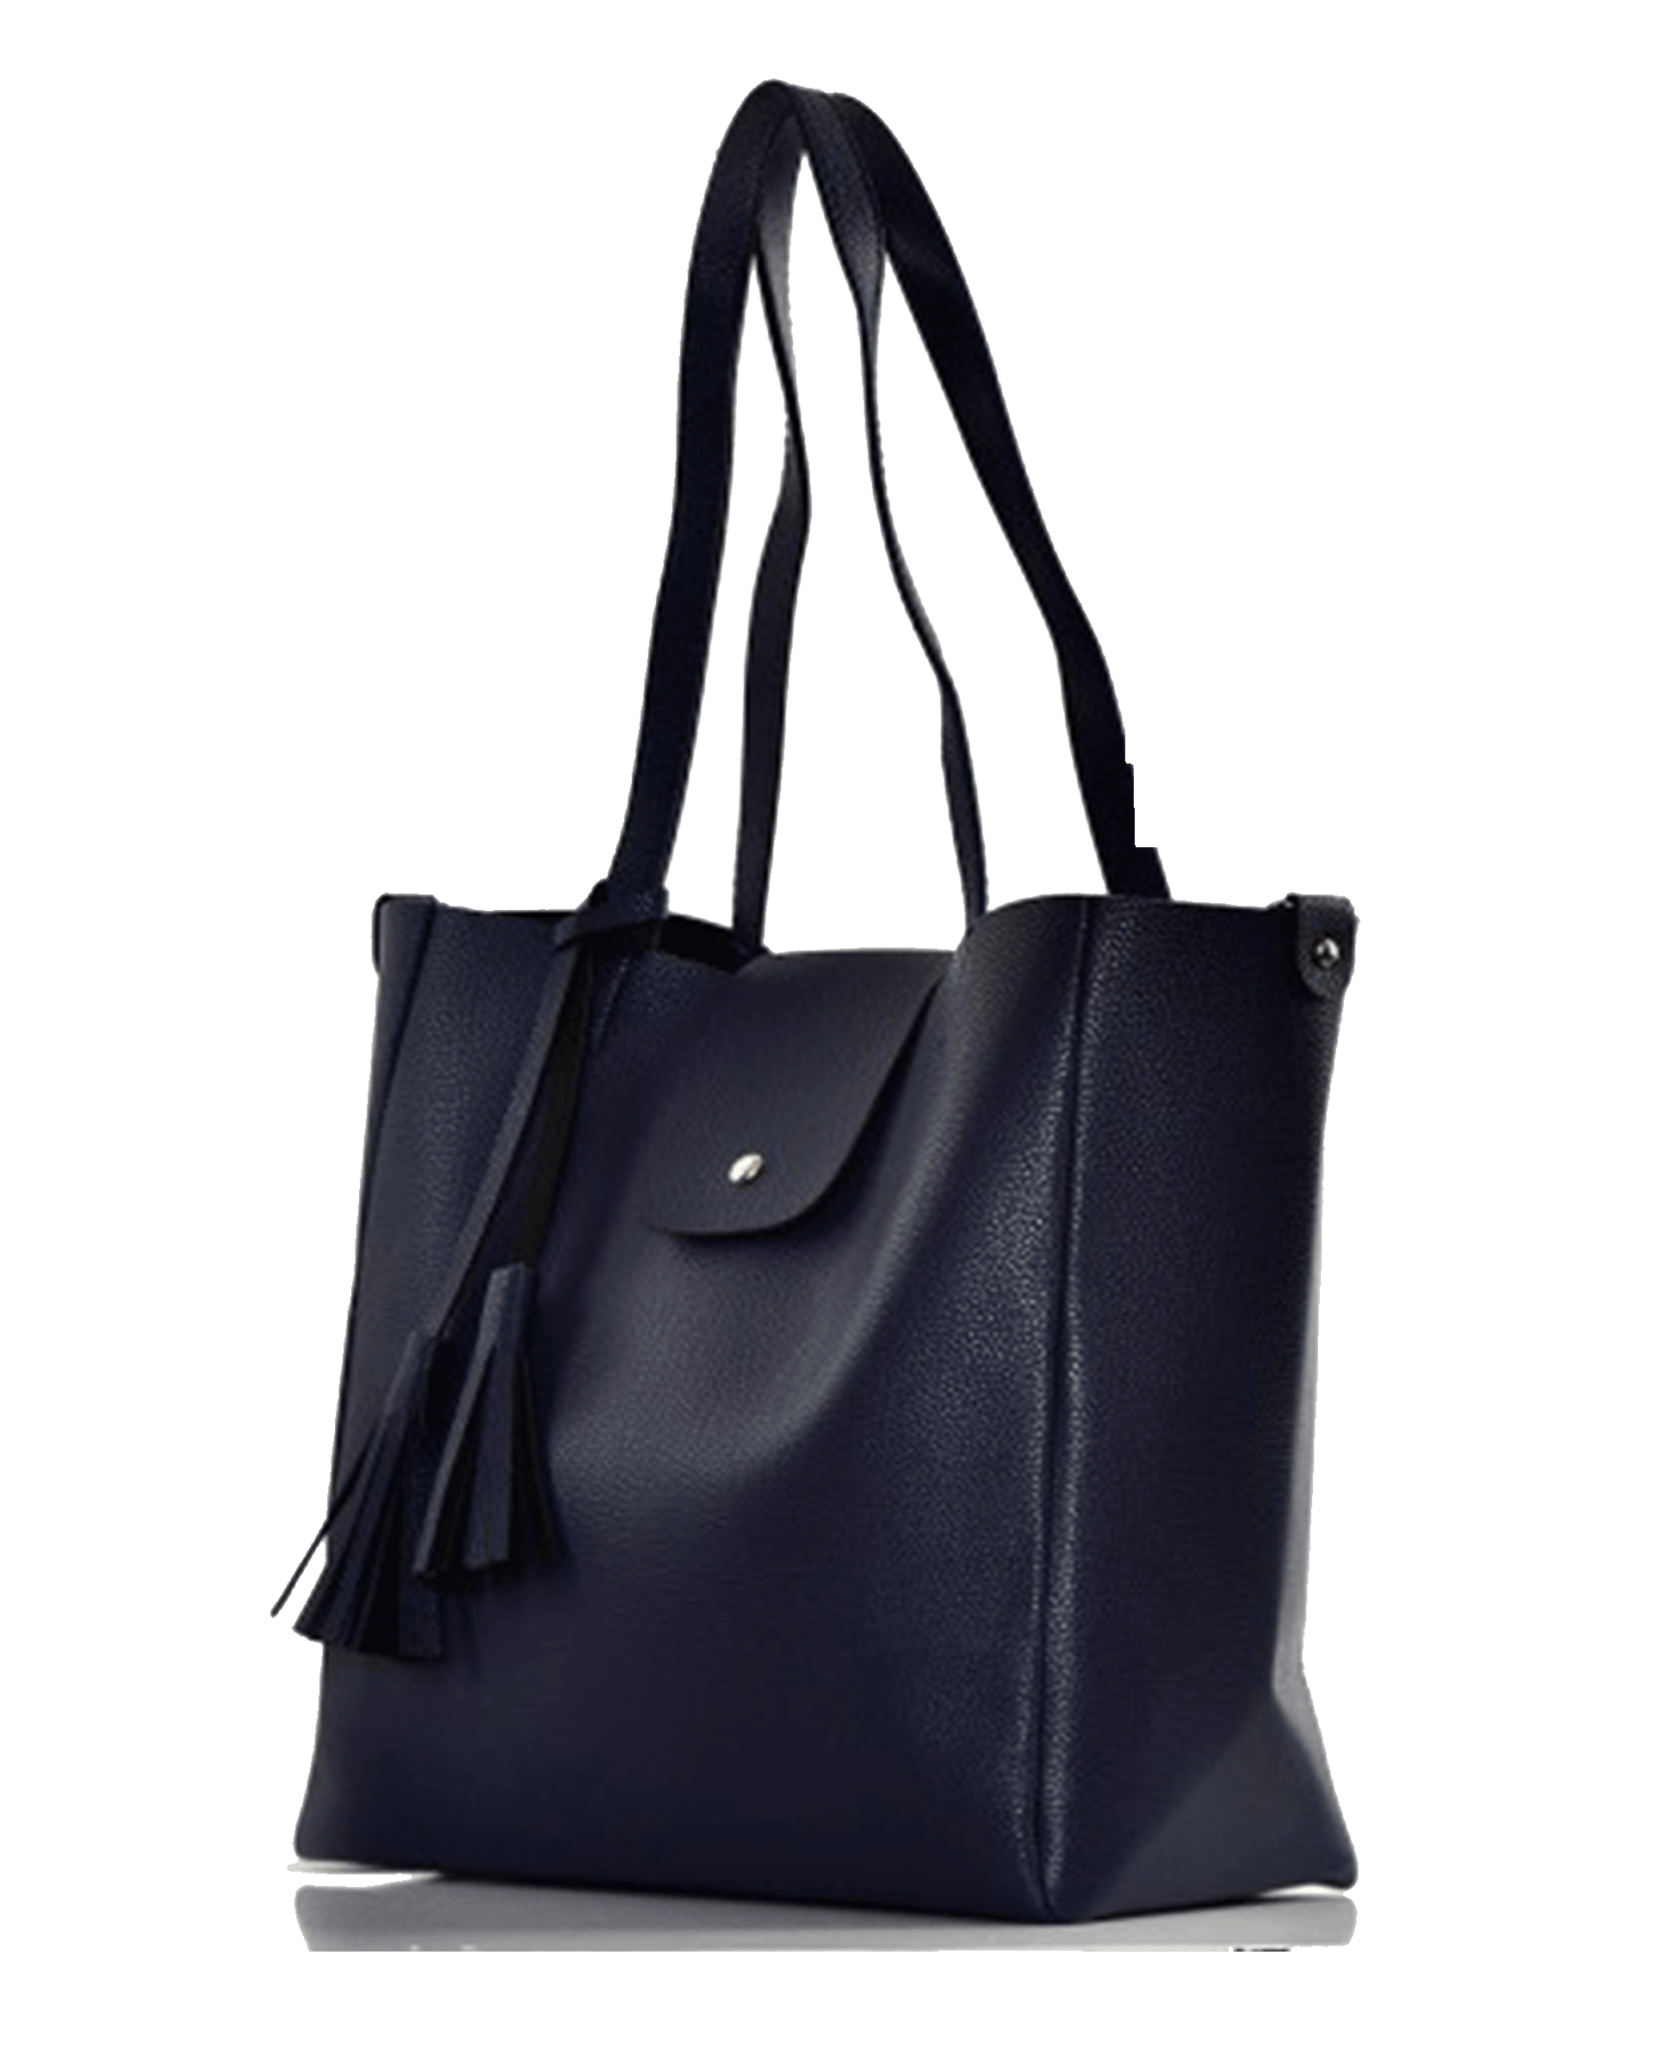 Black Women Bag PNG HD Quality